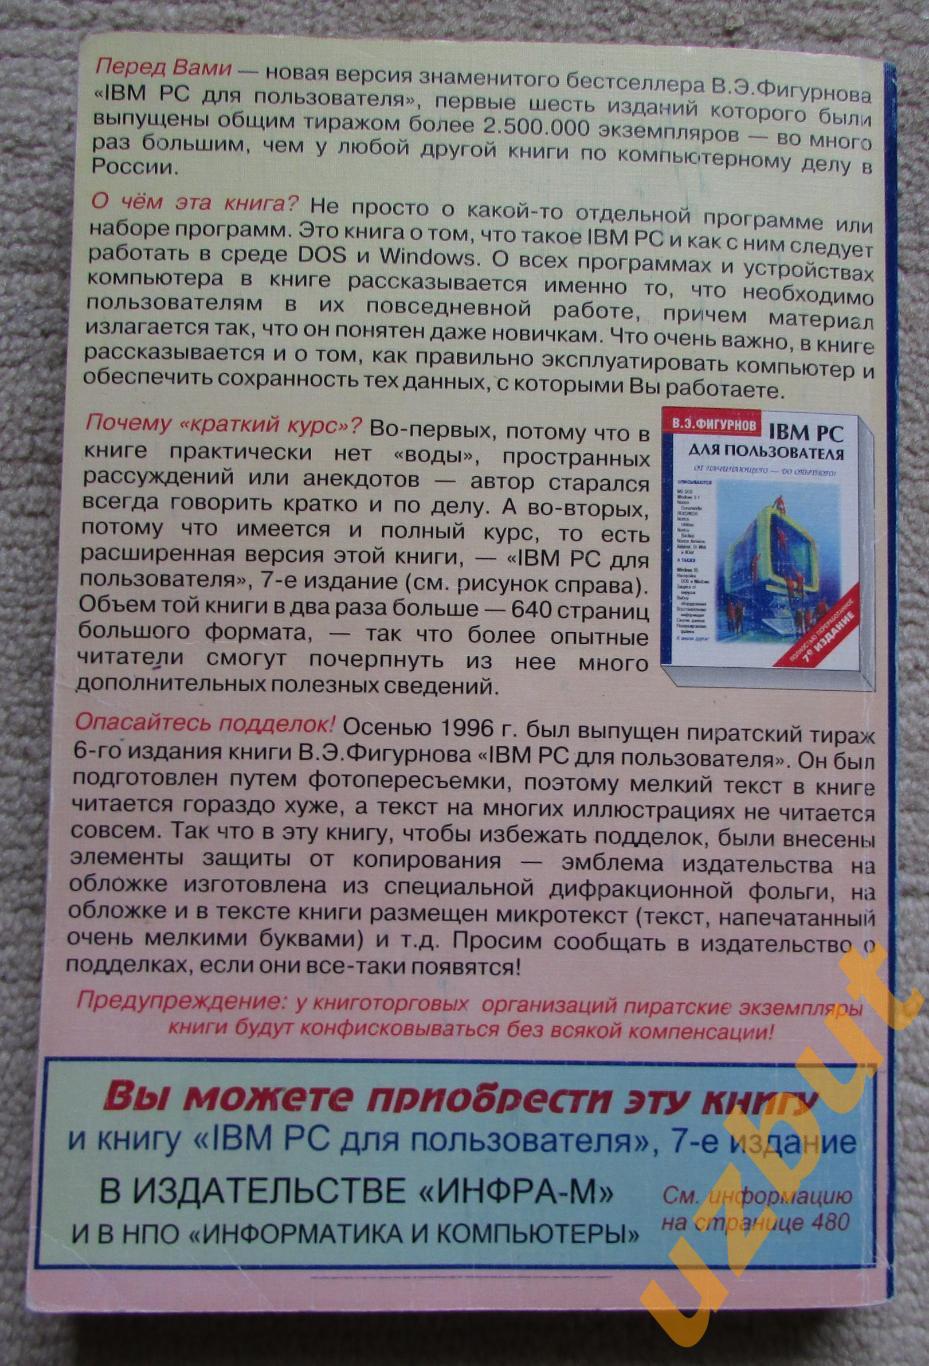 IBM PC для пользователя, В,Э, Фигурнов, 7-е издание, 1997 1